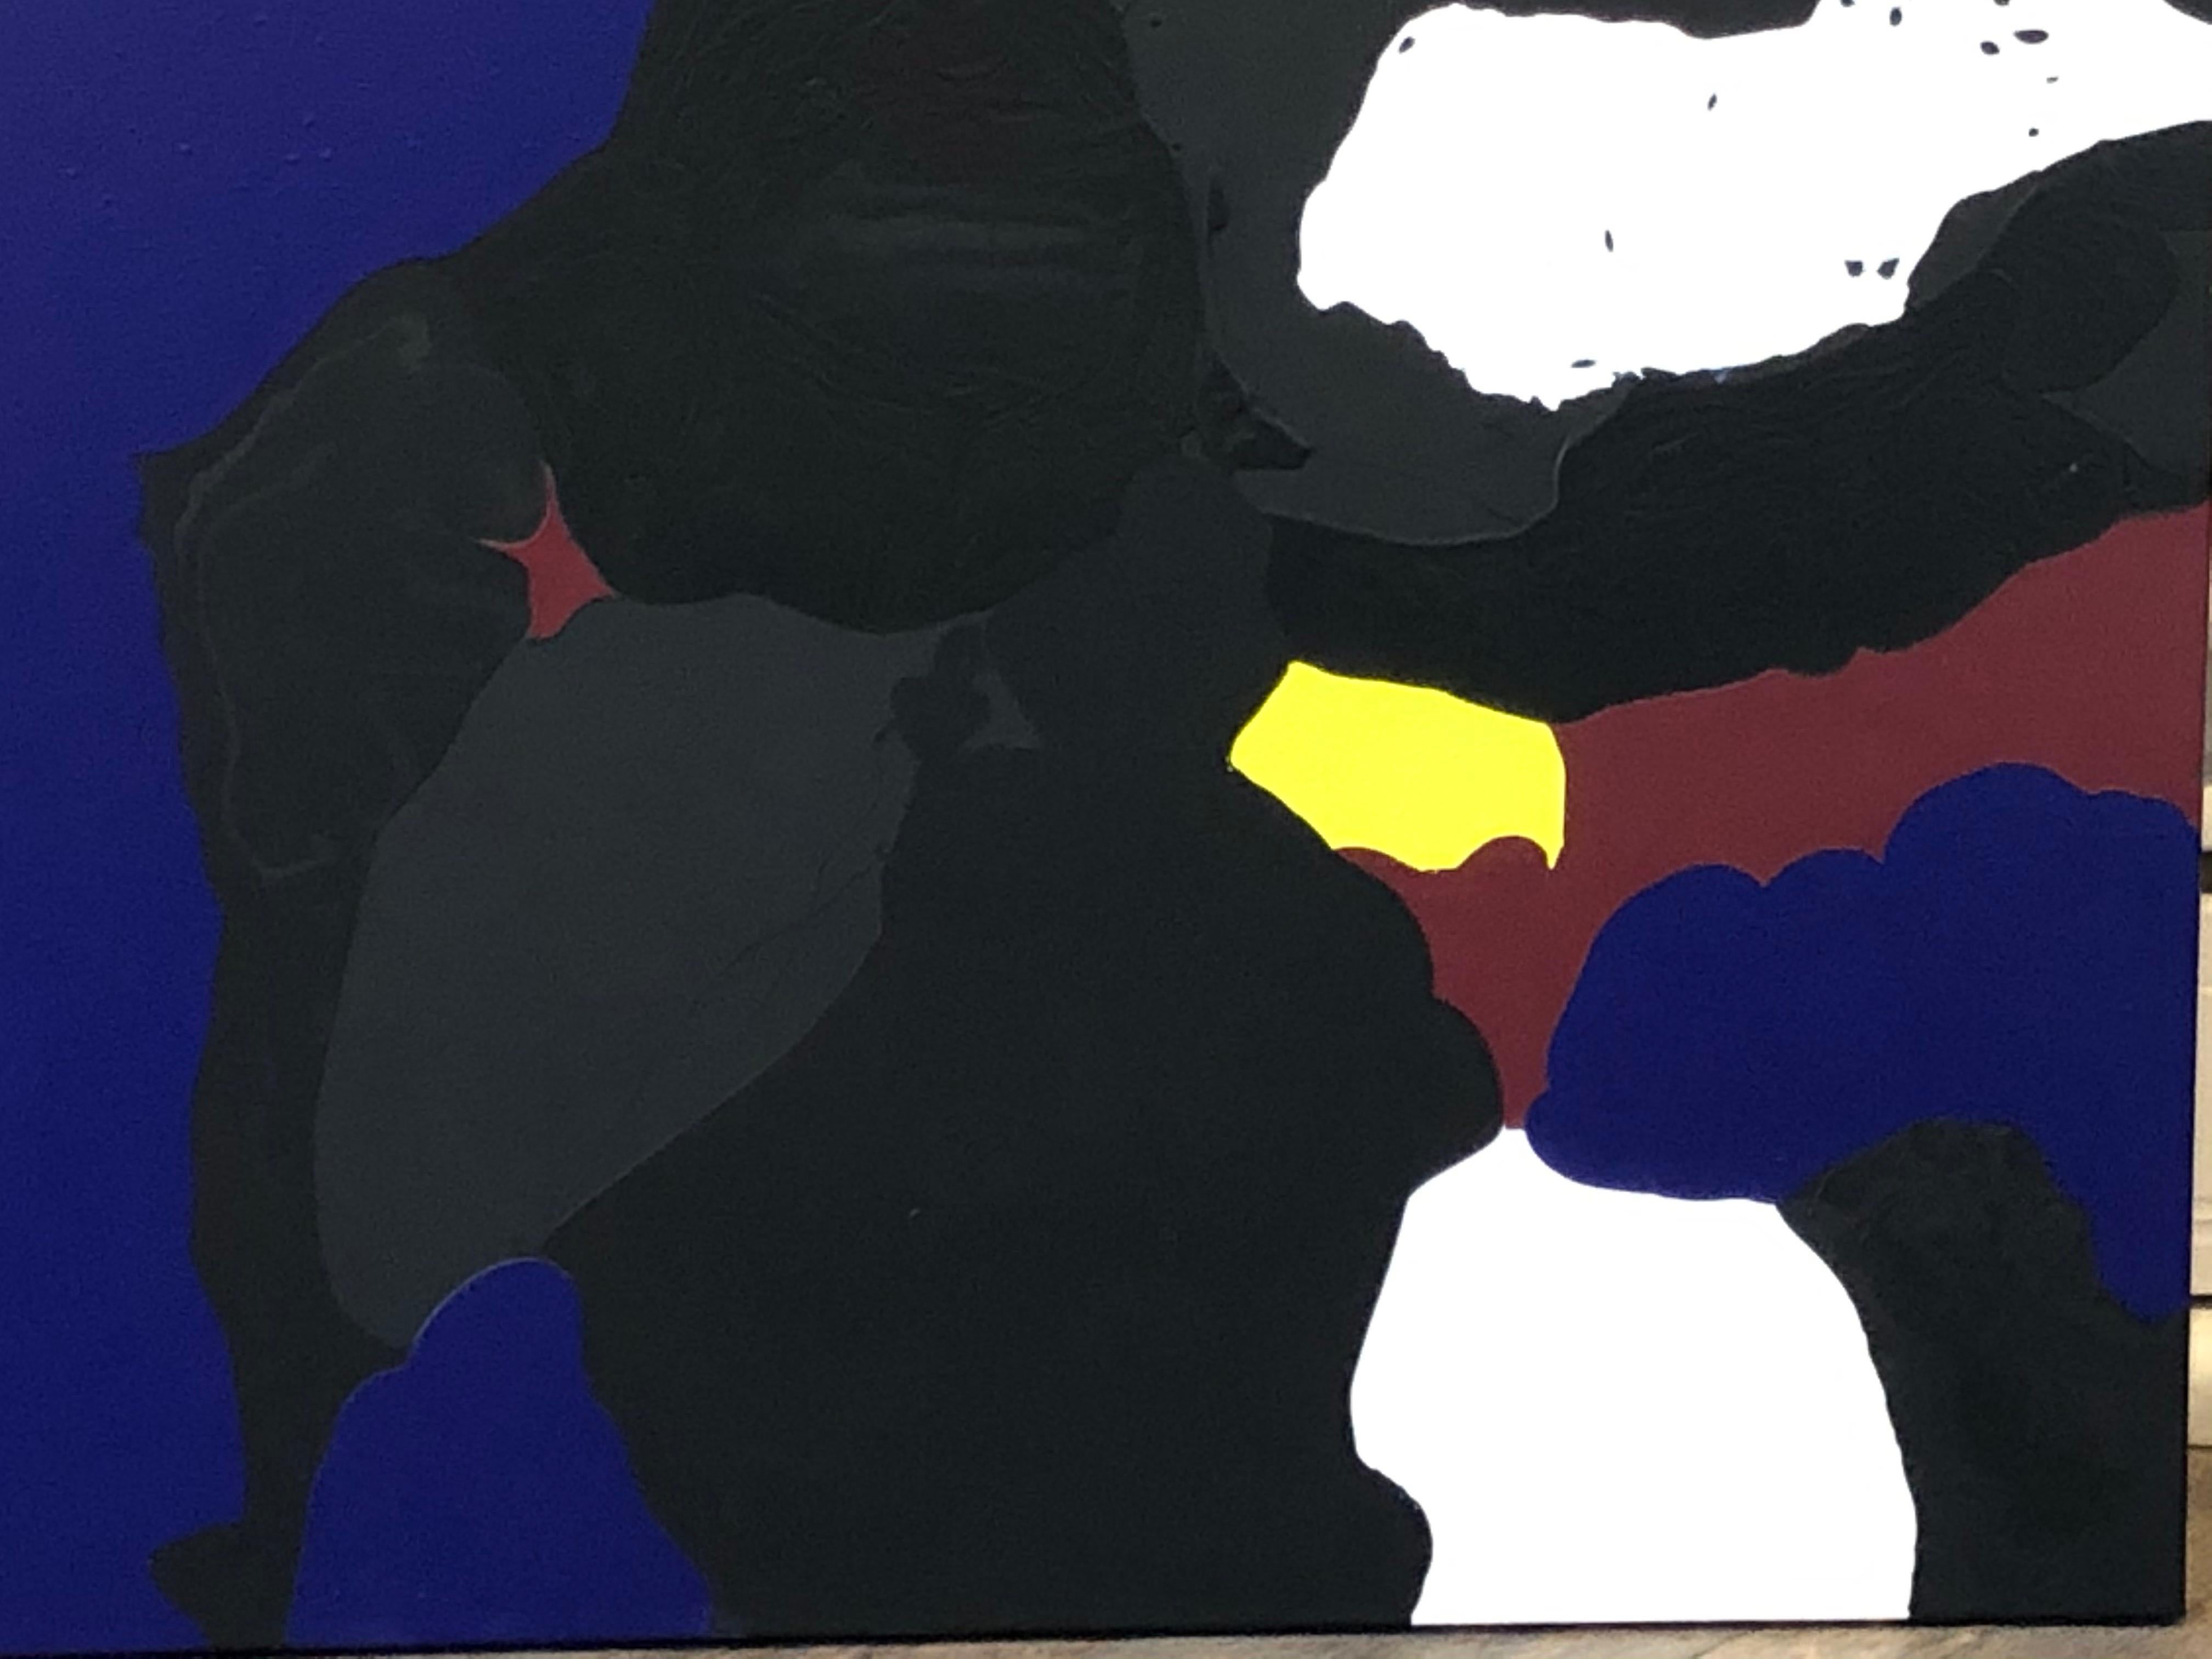 Peinture abstraite à l'écorce de Glenn - Brun vert, bleu, noir, jaune, rouge, blanc - Painting de Glenn A. Green